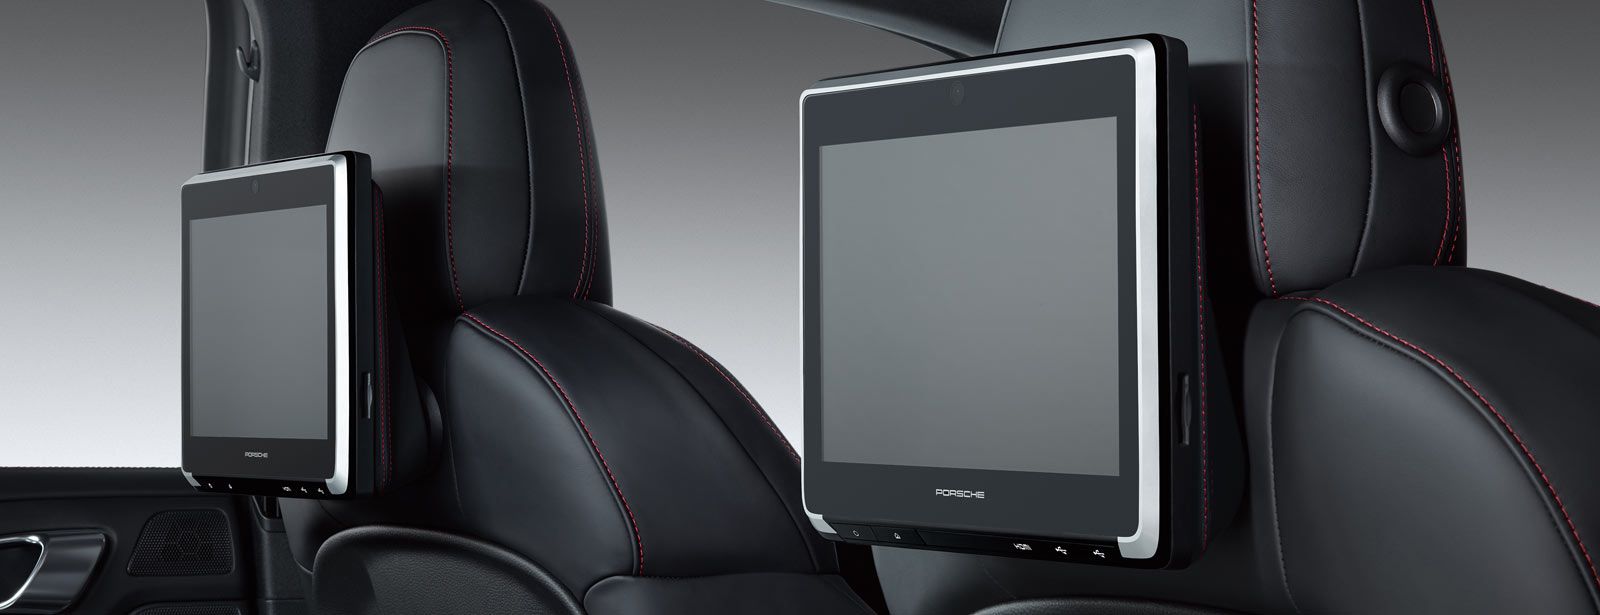 Porsche Rear Seat Entertainment